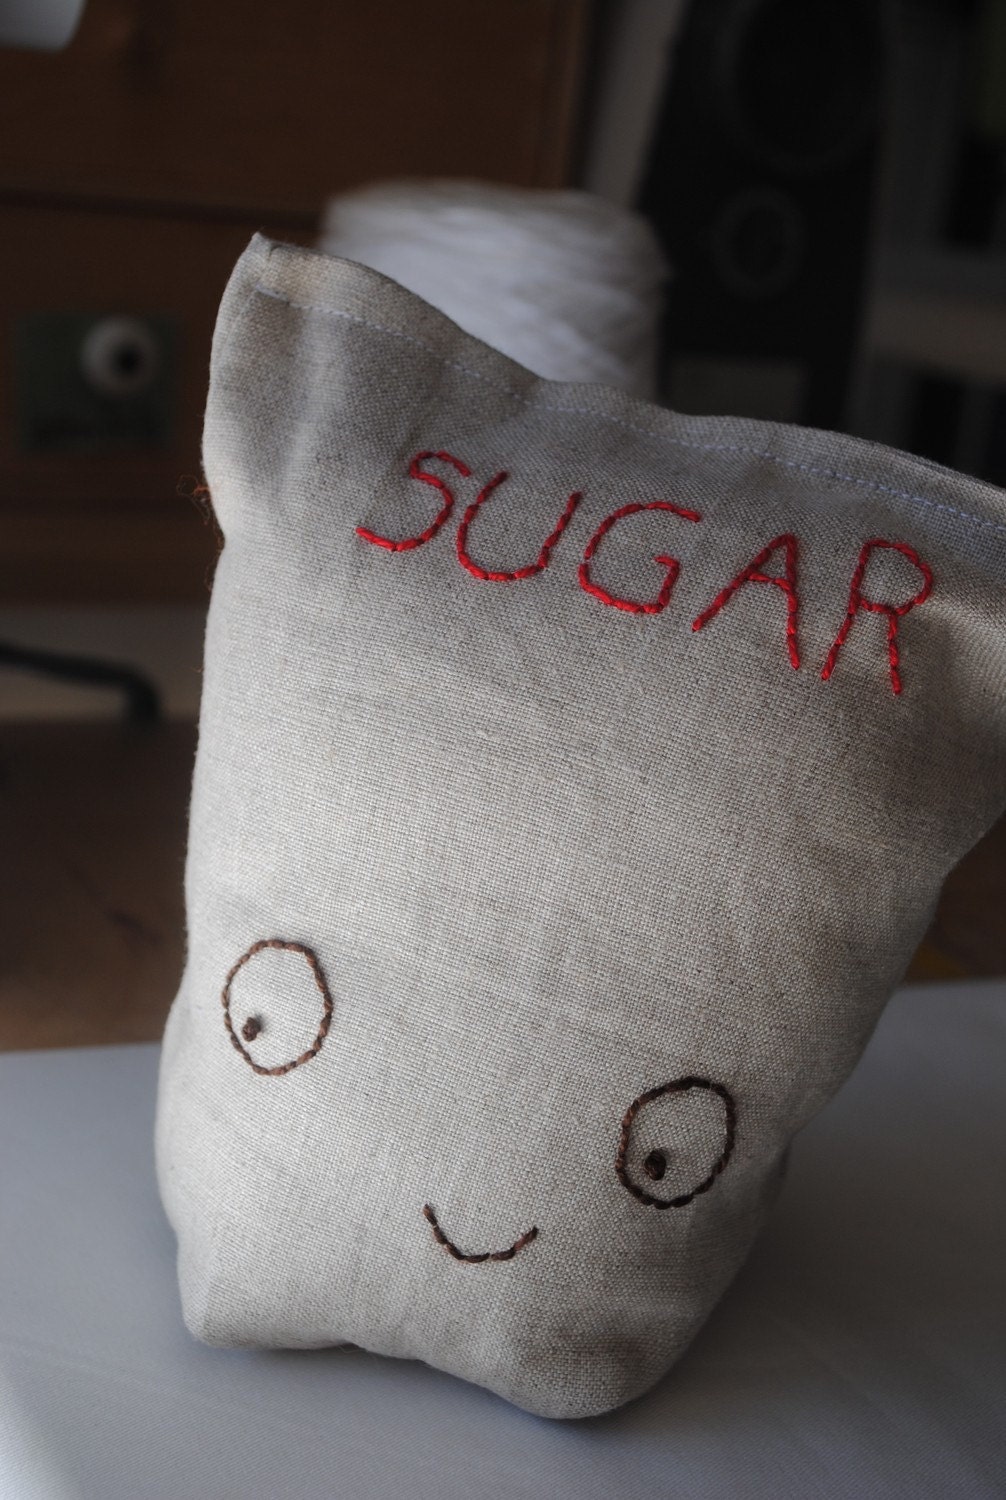 Bag o' Sugar and Bag o' Flour set